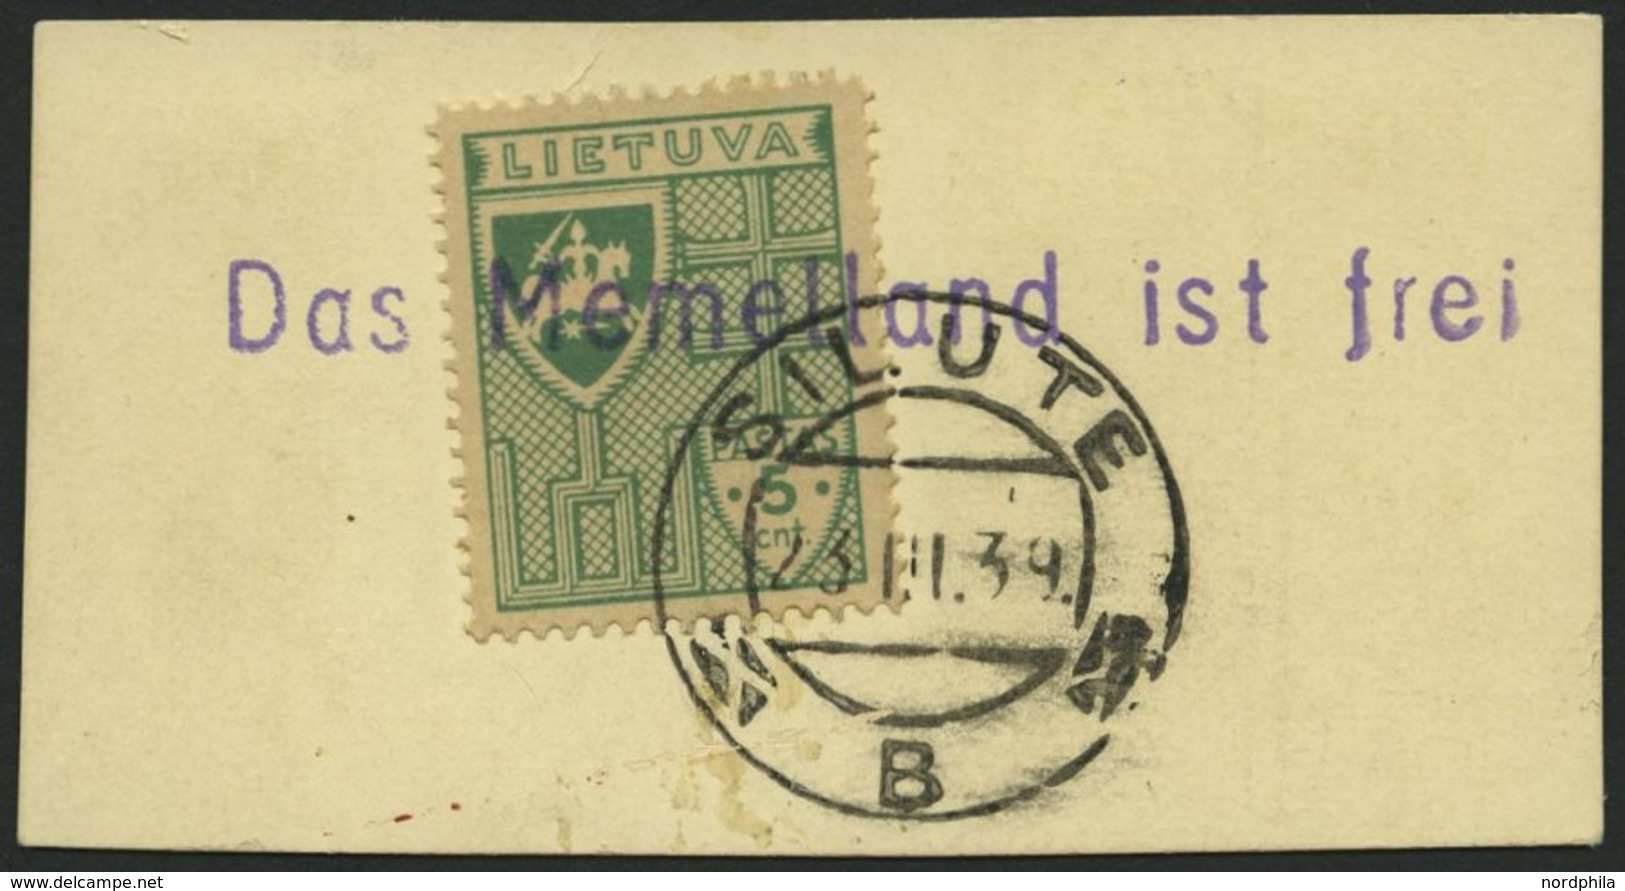 LITAUEN 409 BrfStk, 1939, 5 C. Grün Mit Stempel SILUTE Und Violettem L1 Das Memelland Ist Frei, Prachtbriefstück - Litauen